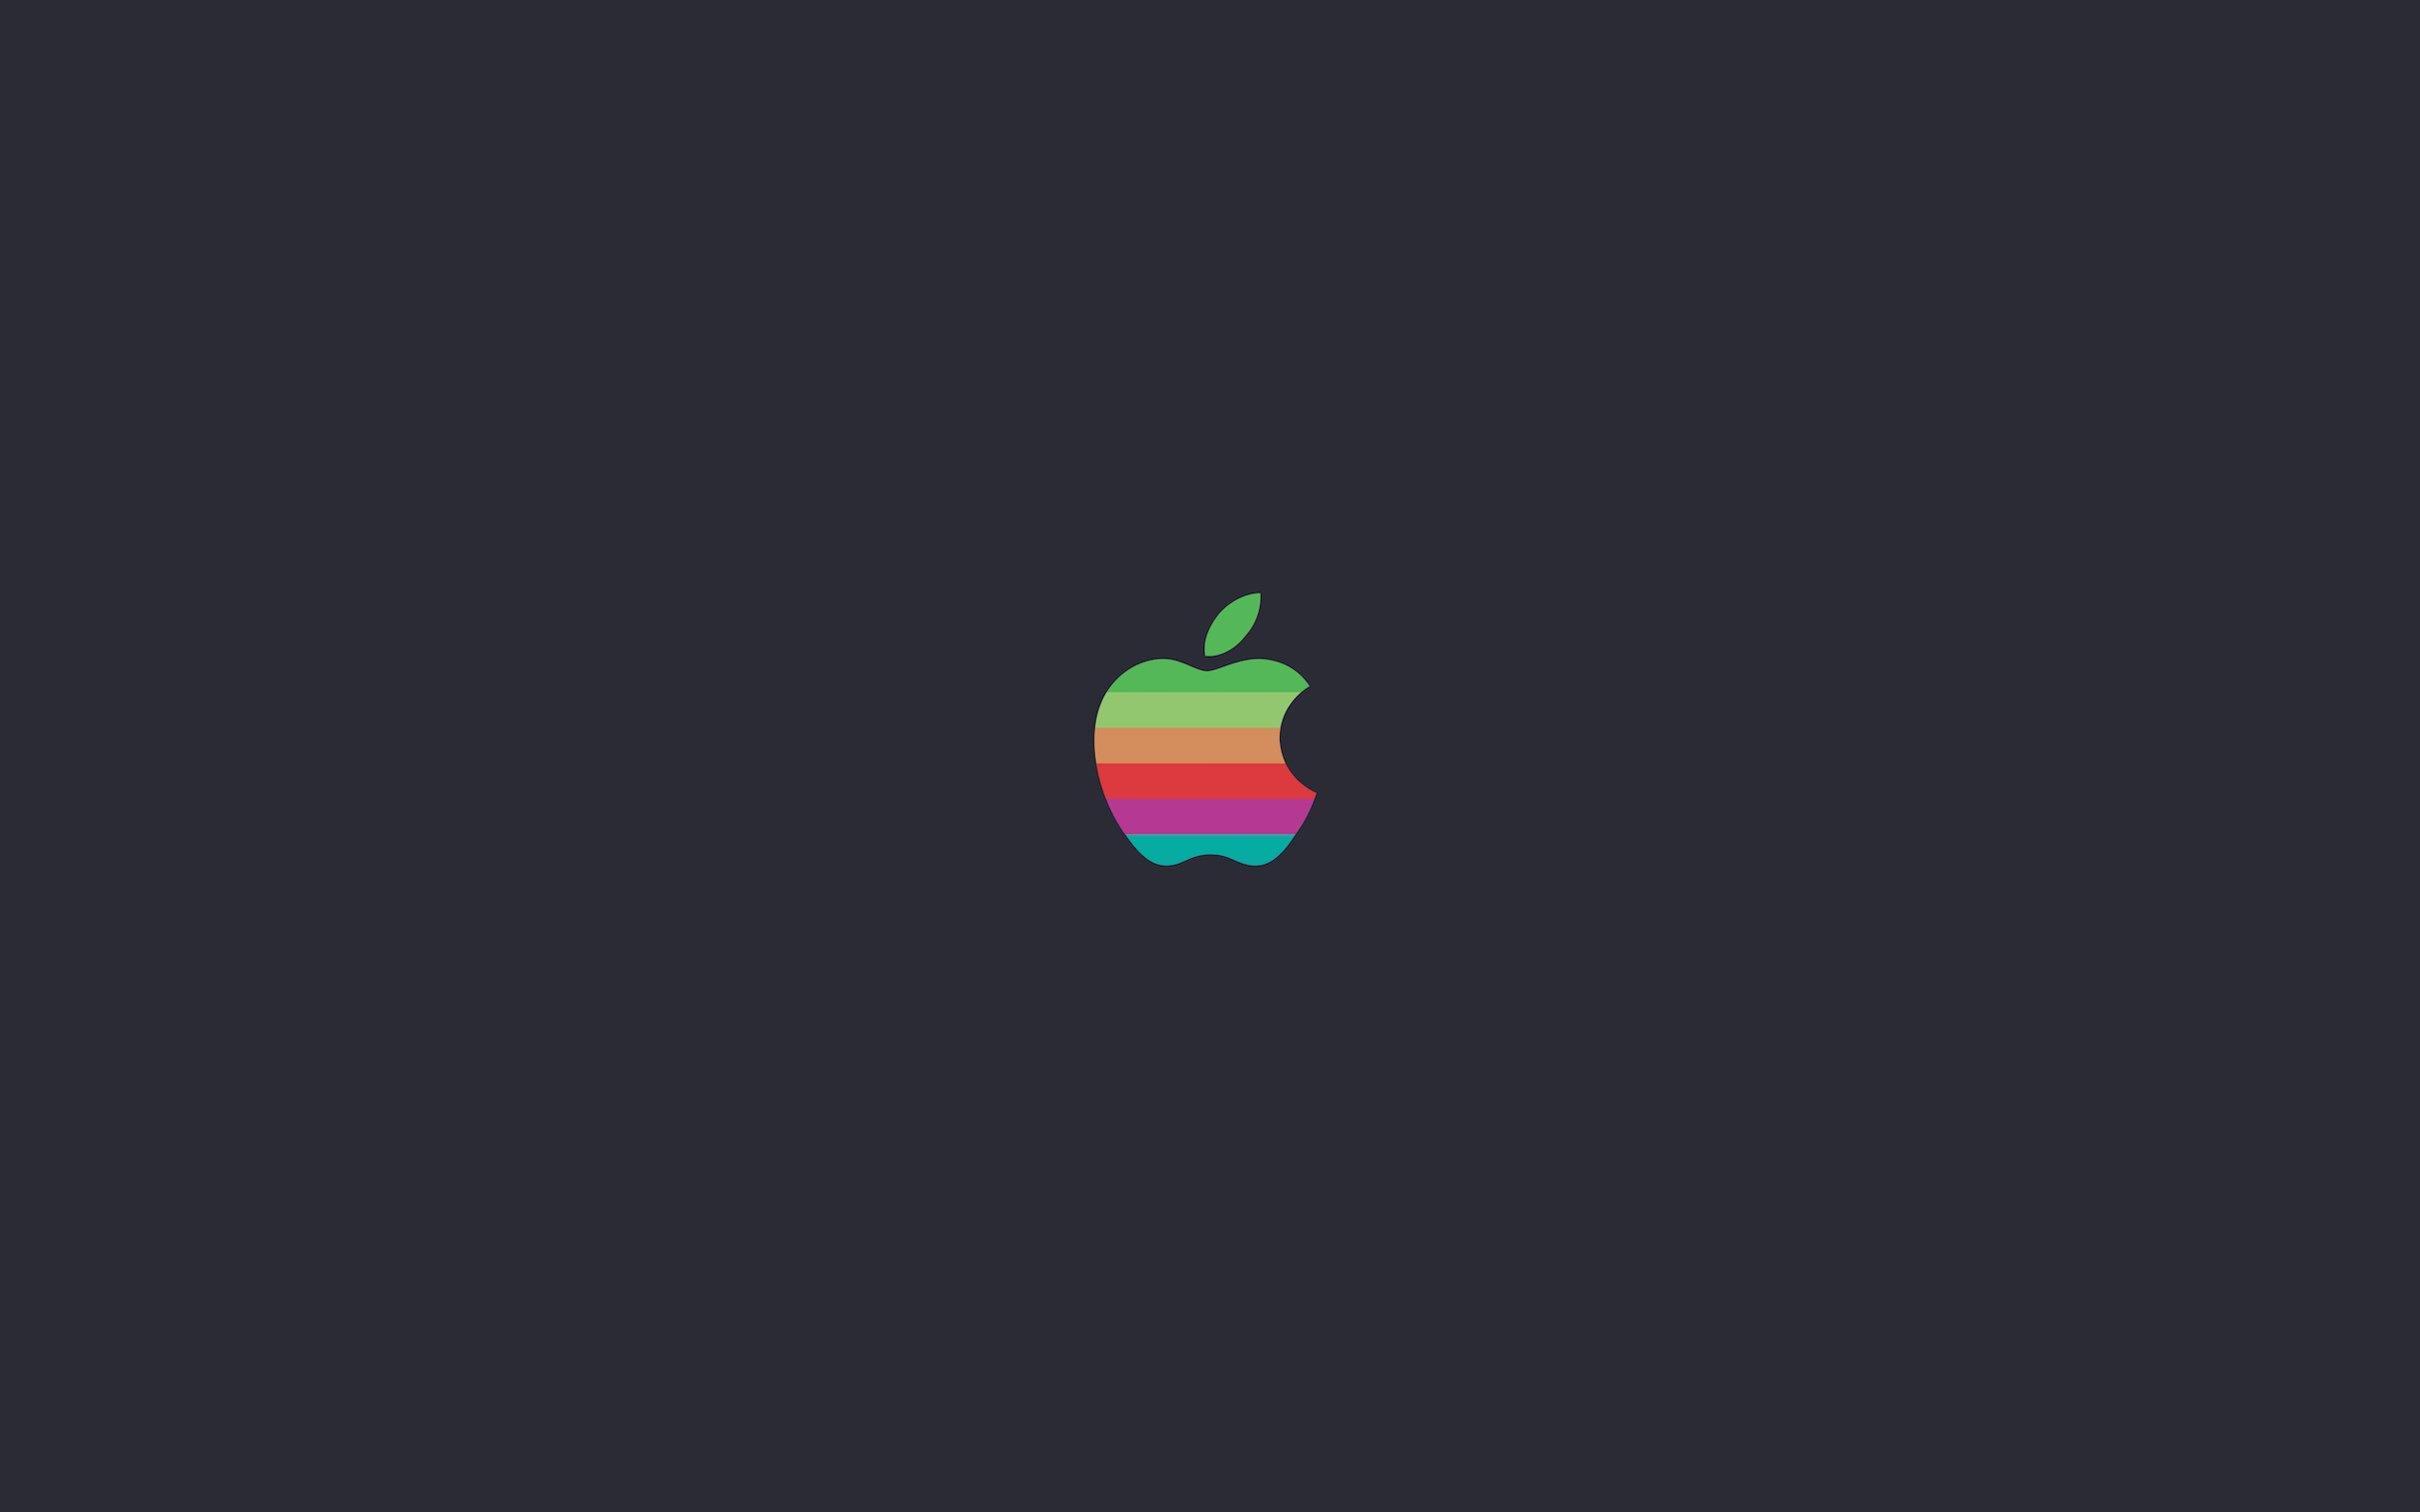 WWDC16 Apple Logo Wallpaper